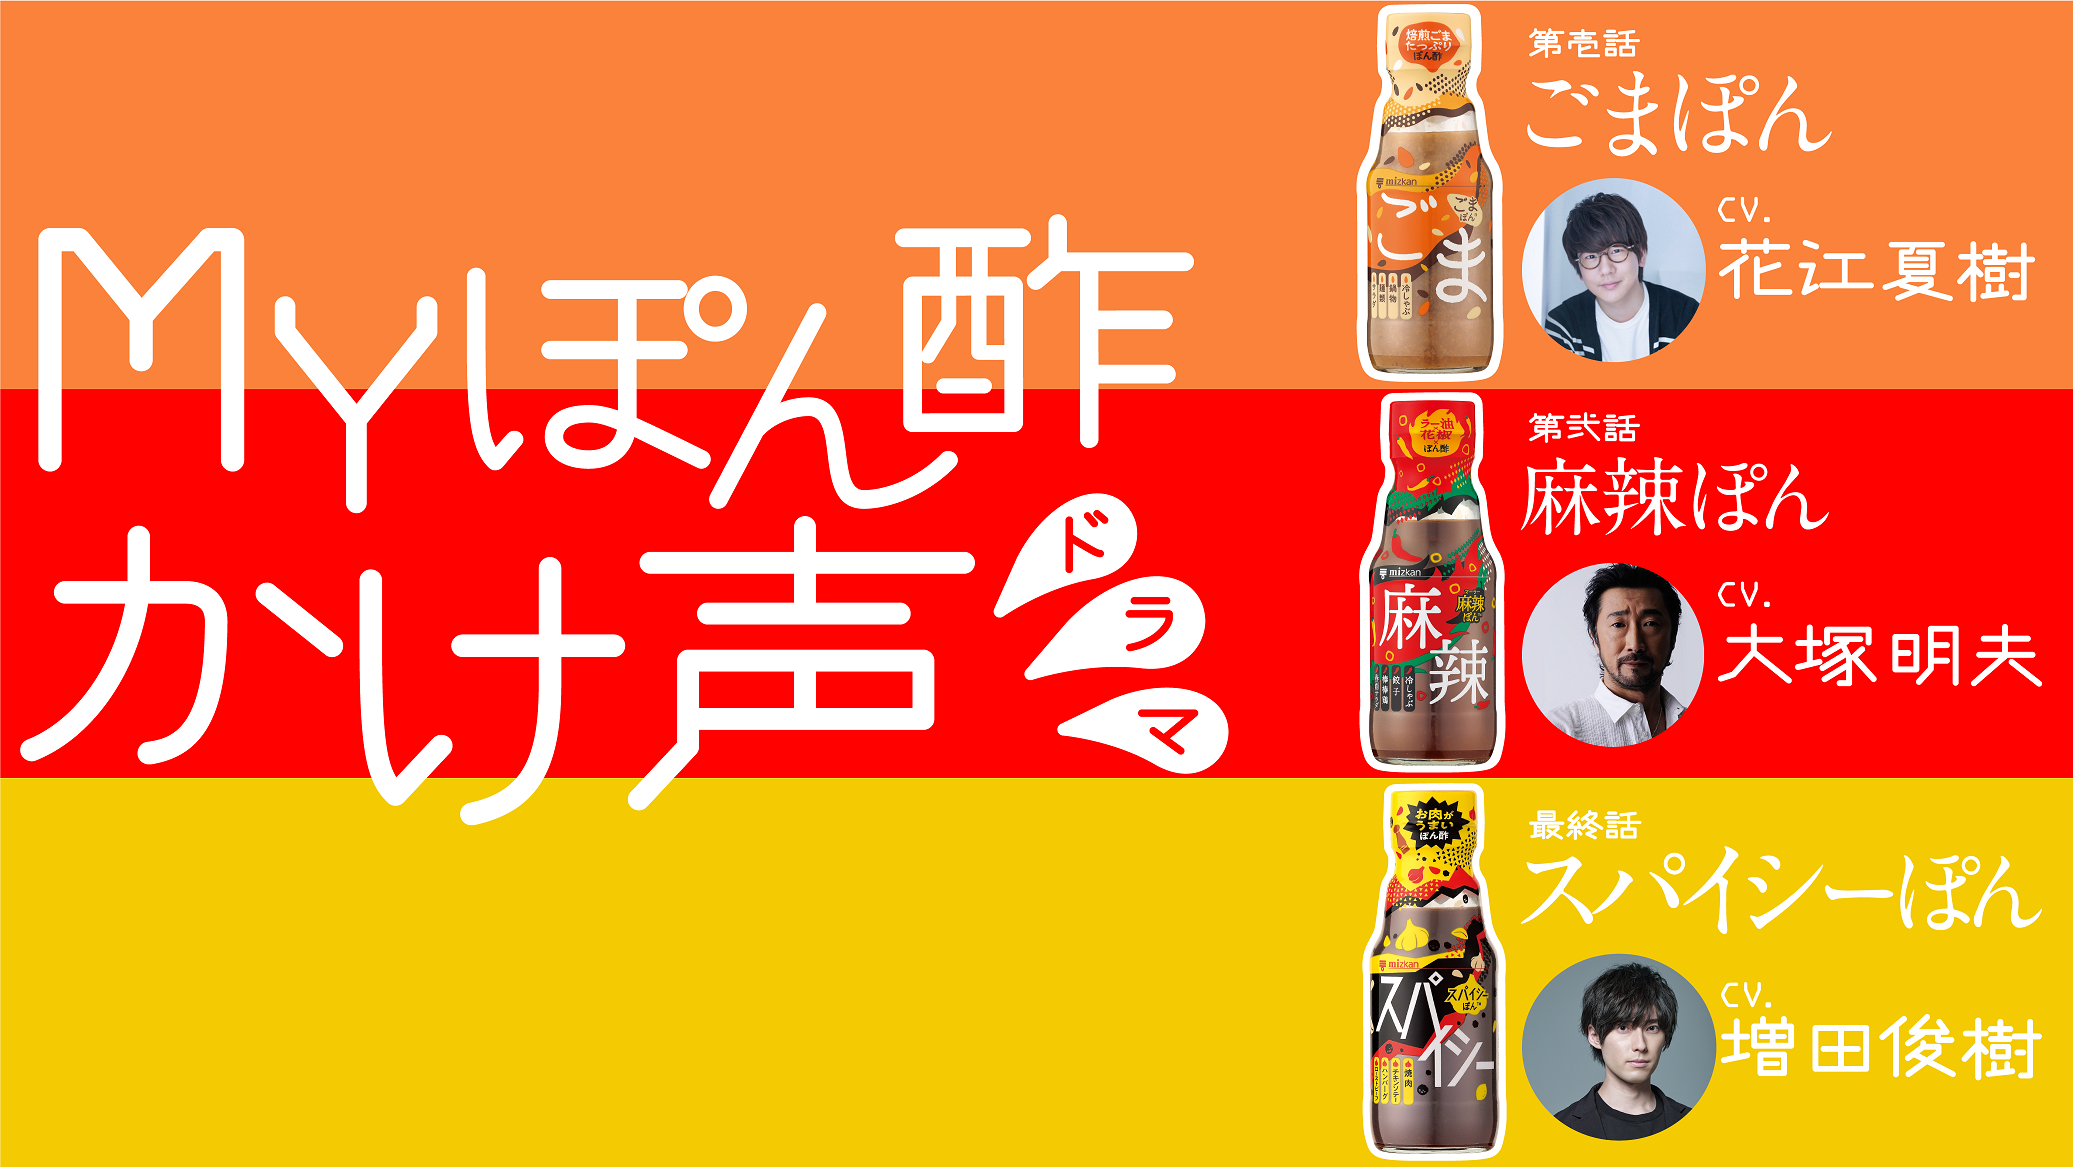 もつ鍋を食べてGo To 九州気分！「原価酒場 はかた商店」にて
9月より新メニュー『極み-kiwami-』を提供開始